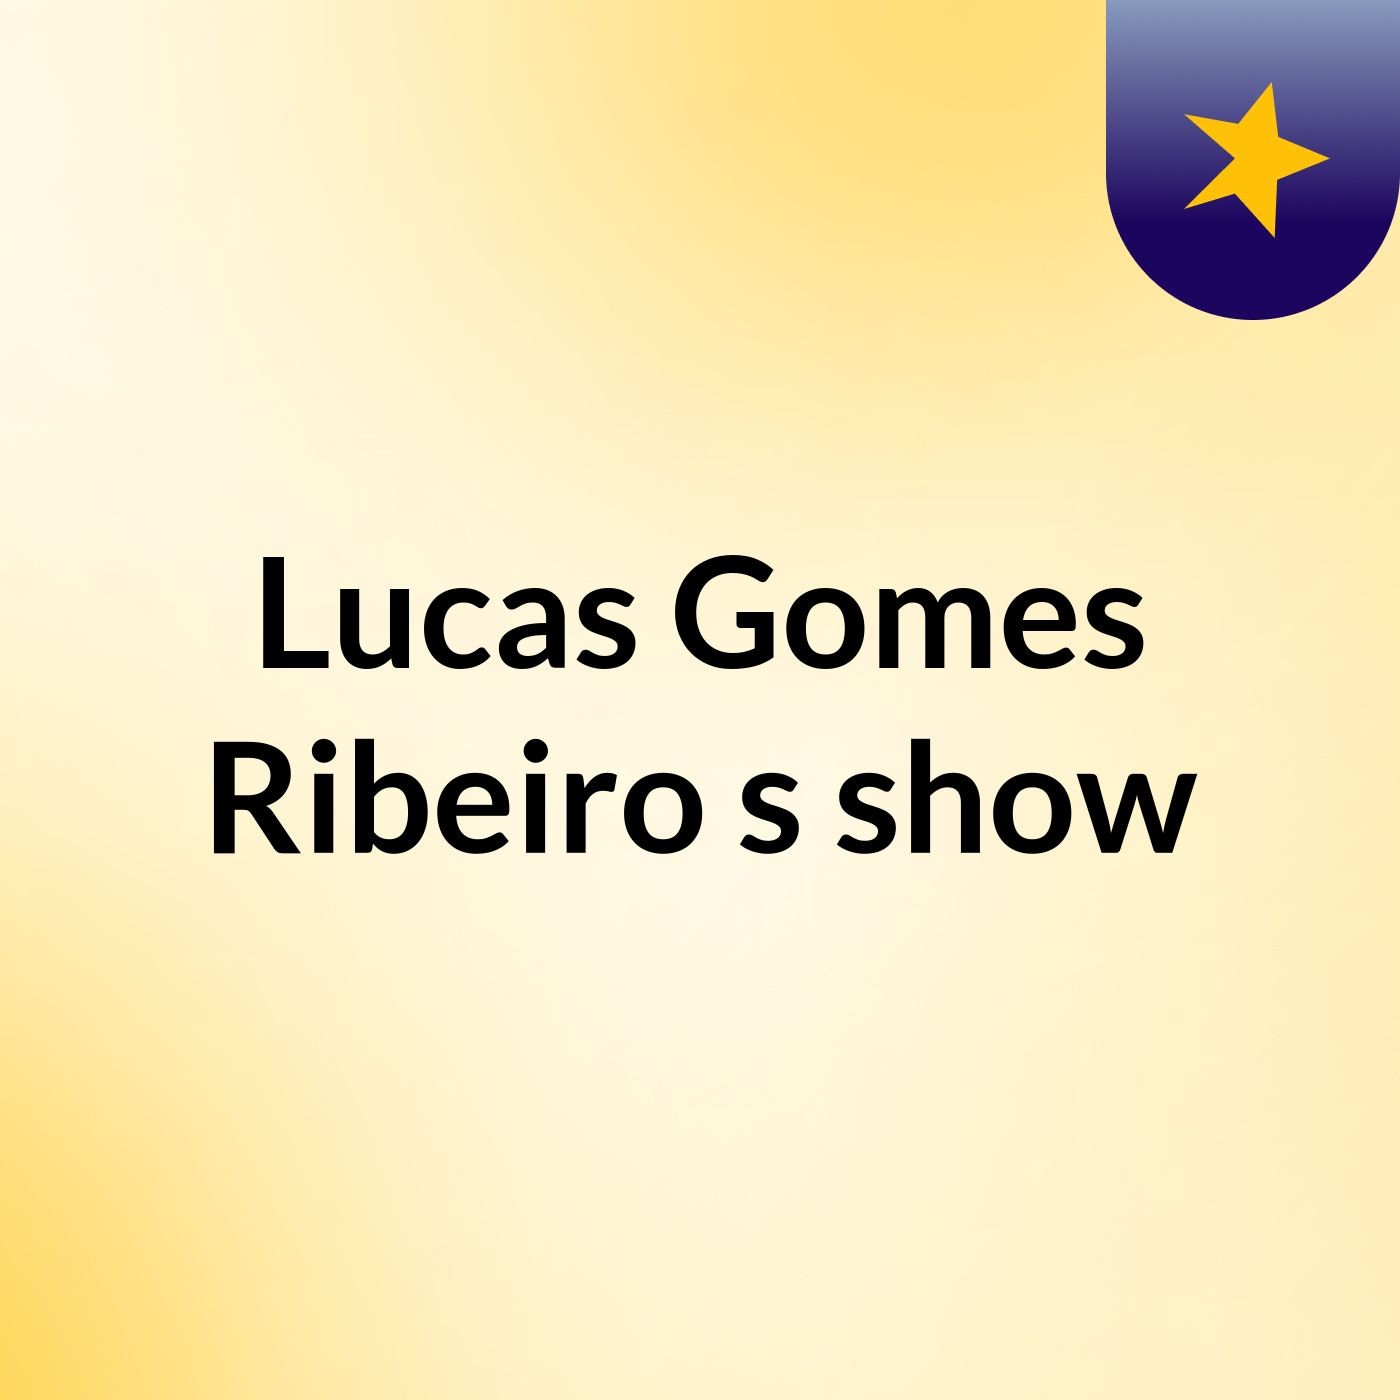 Lucas Gomes Ribeiro's show